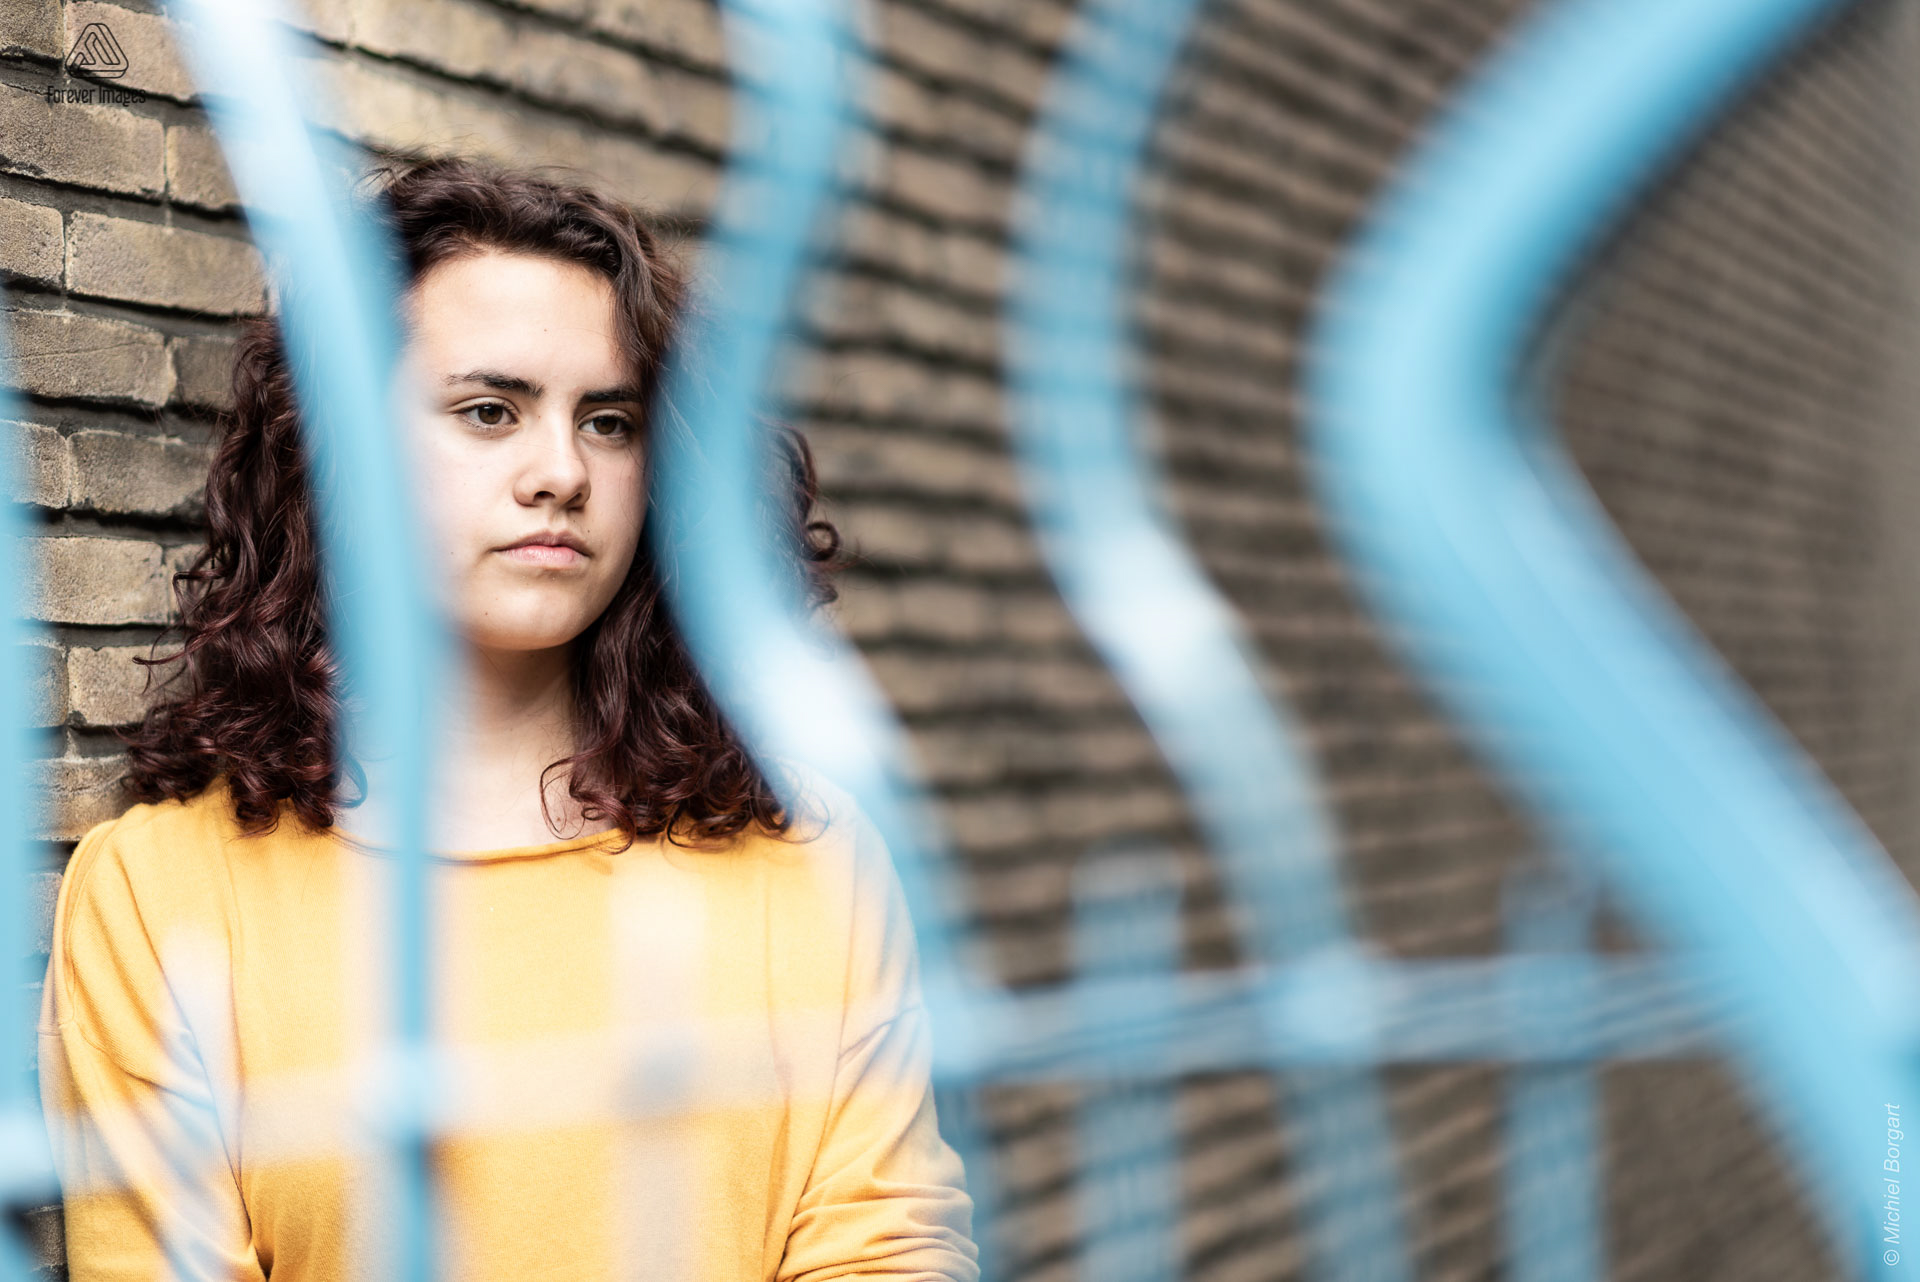 Portretfoto jonge dame tegen muur achter blauw hek kijkend opzij | Tessa Holscher | Portretfotograaf Michiel Borgart - Forever Images.